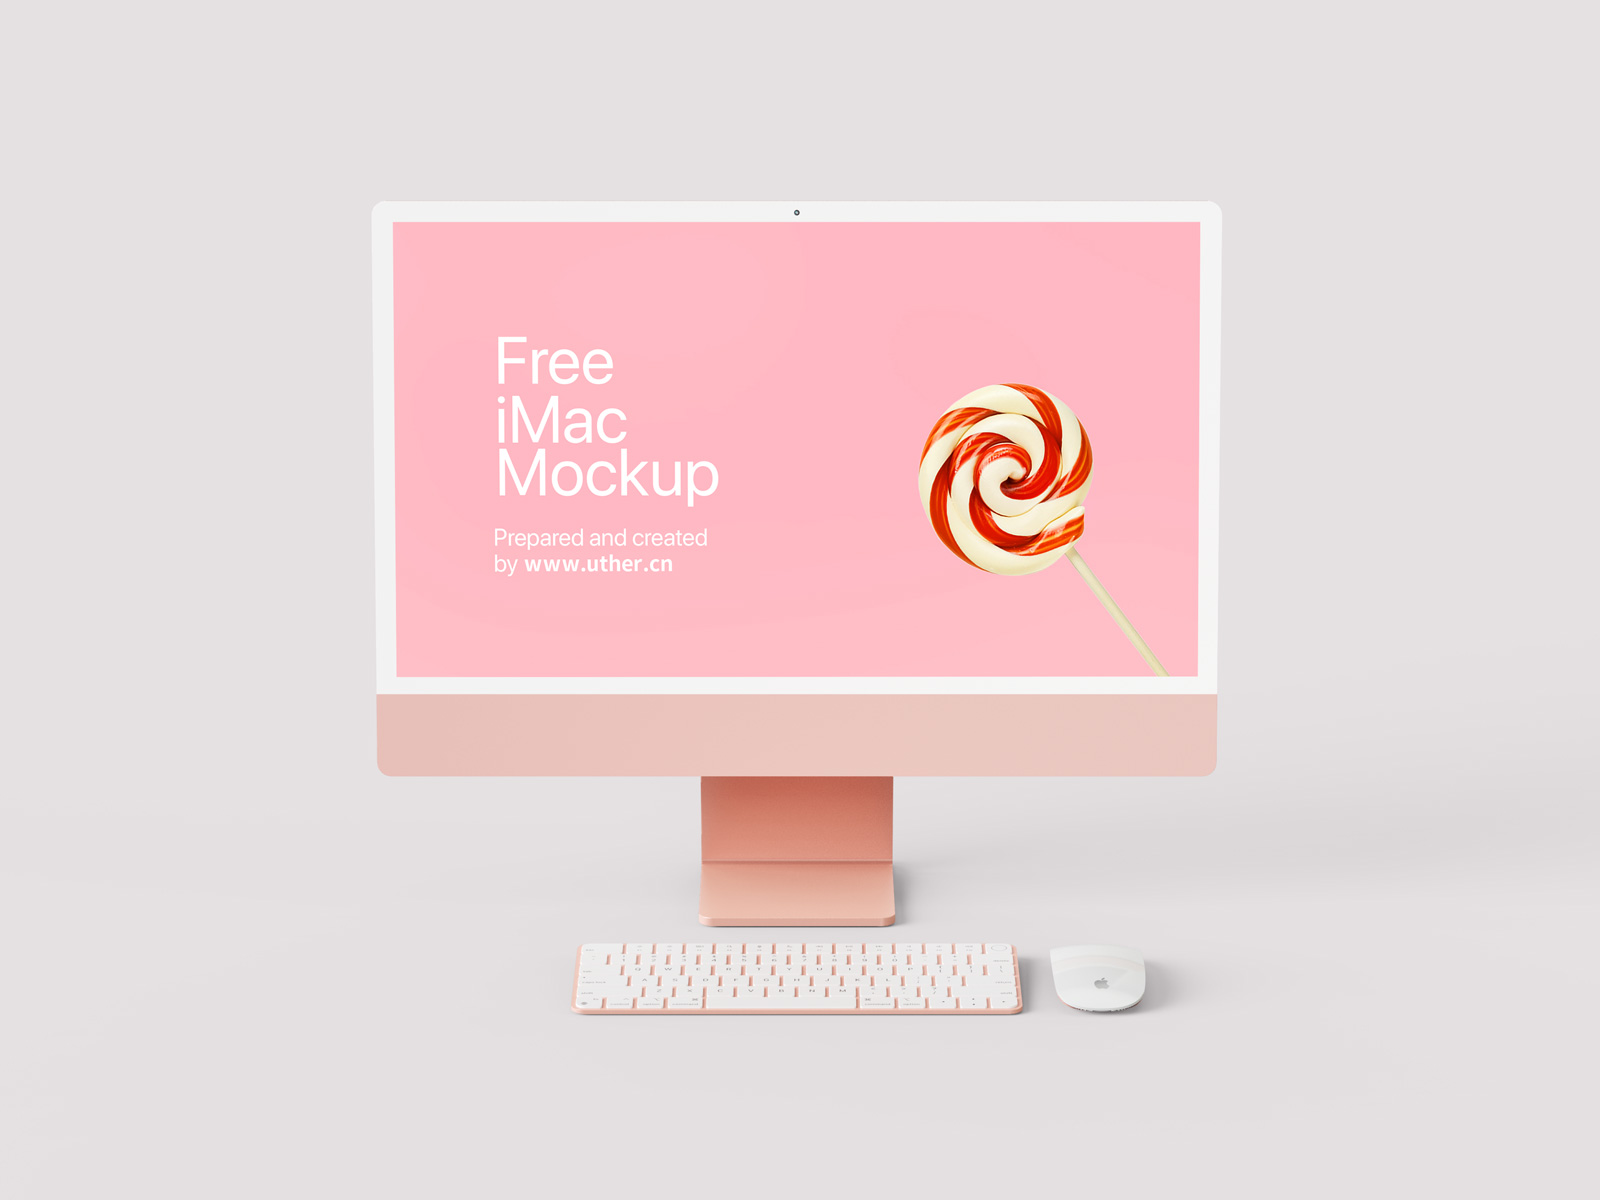 高品质正面粉色iMac样机模型mockup .psd素材